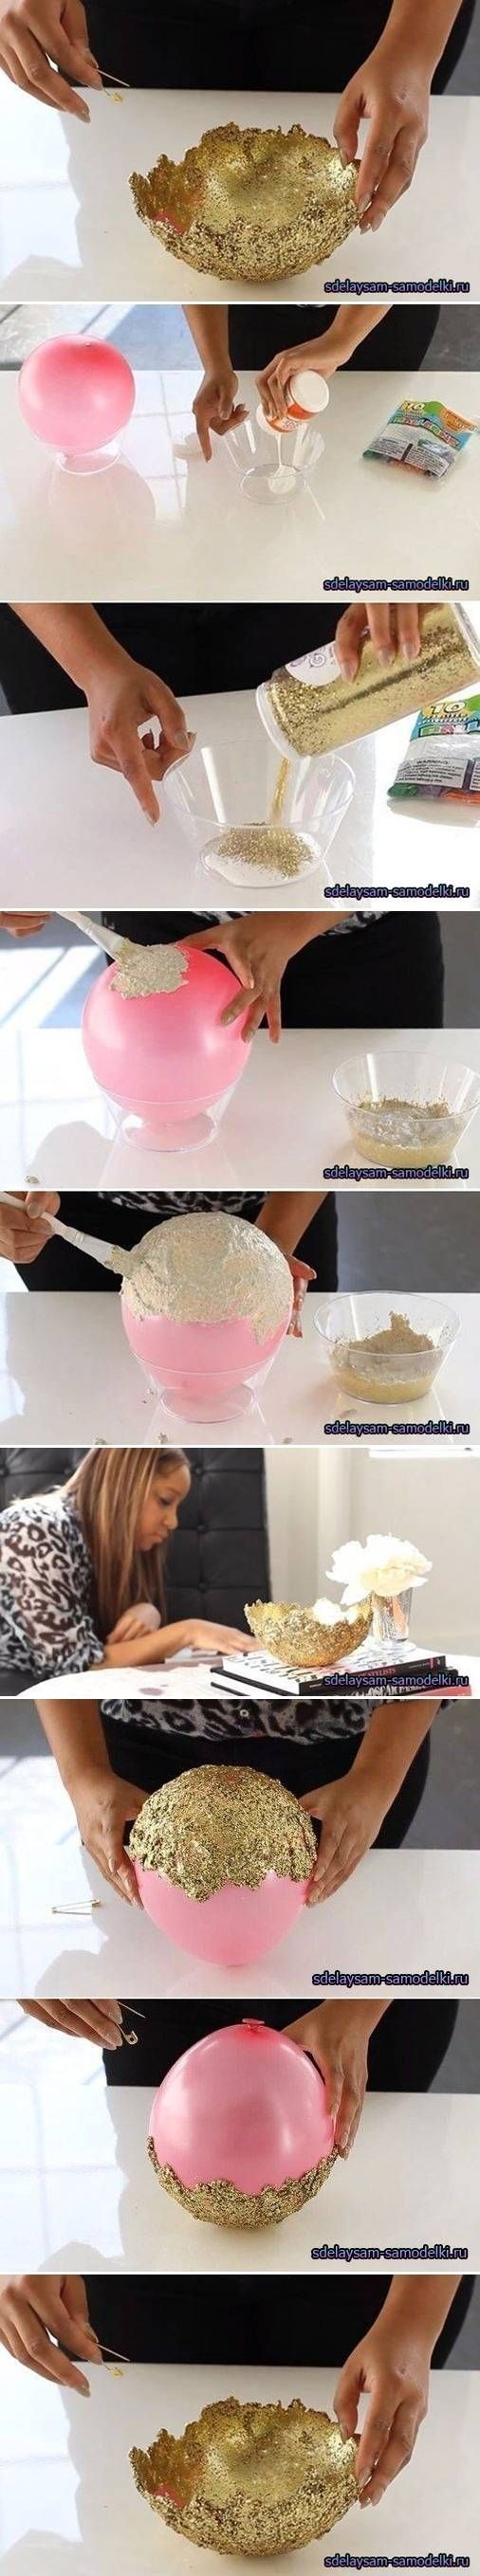 Paint up a DIY glitter bowl.